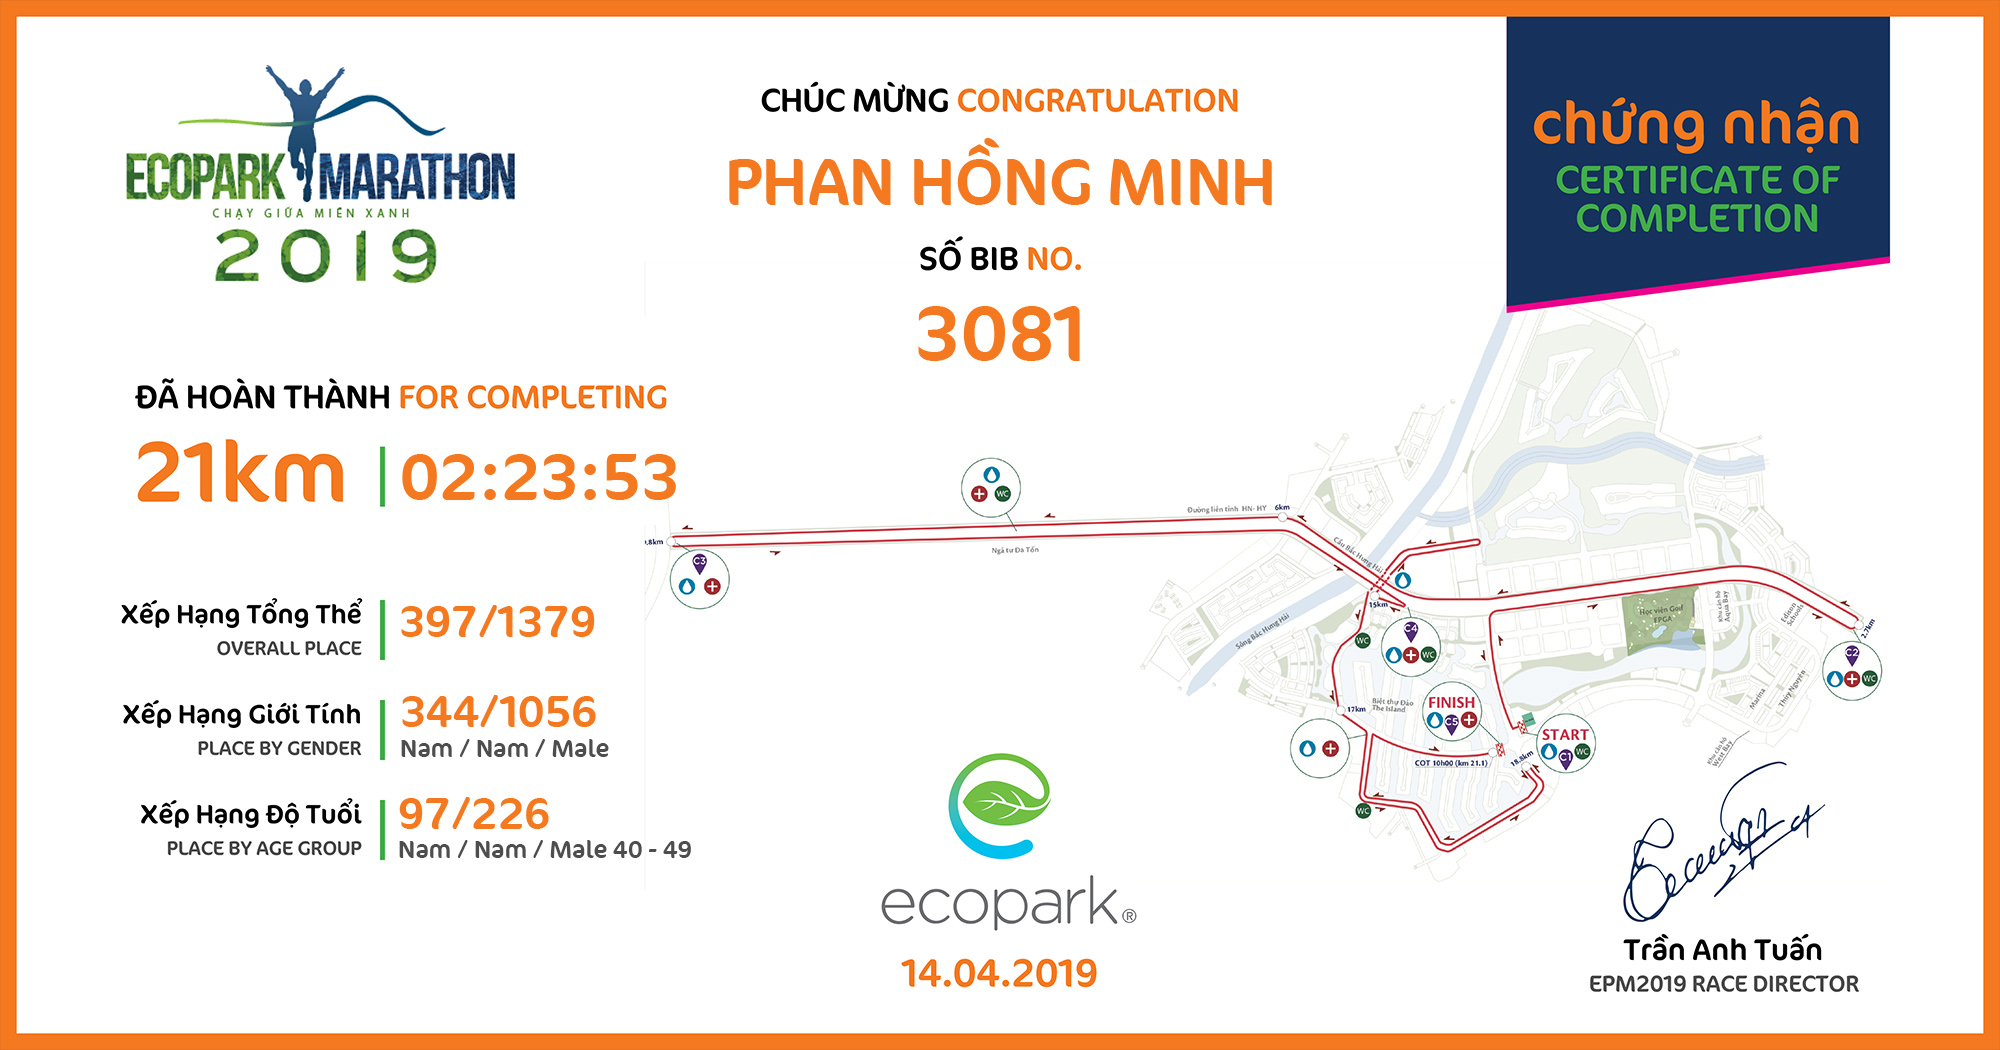 3081 - Phan Hồng Minh